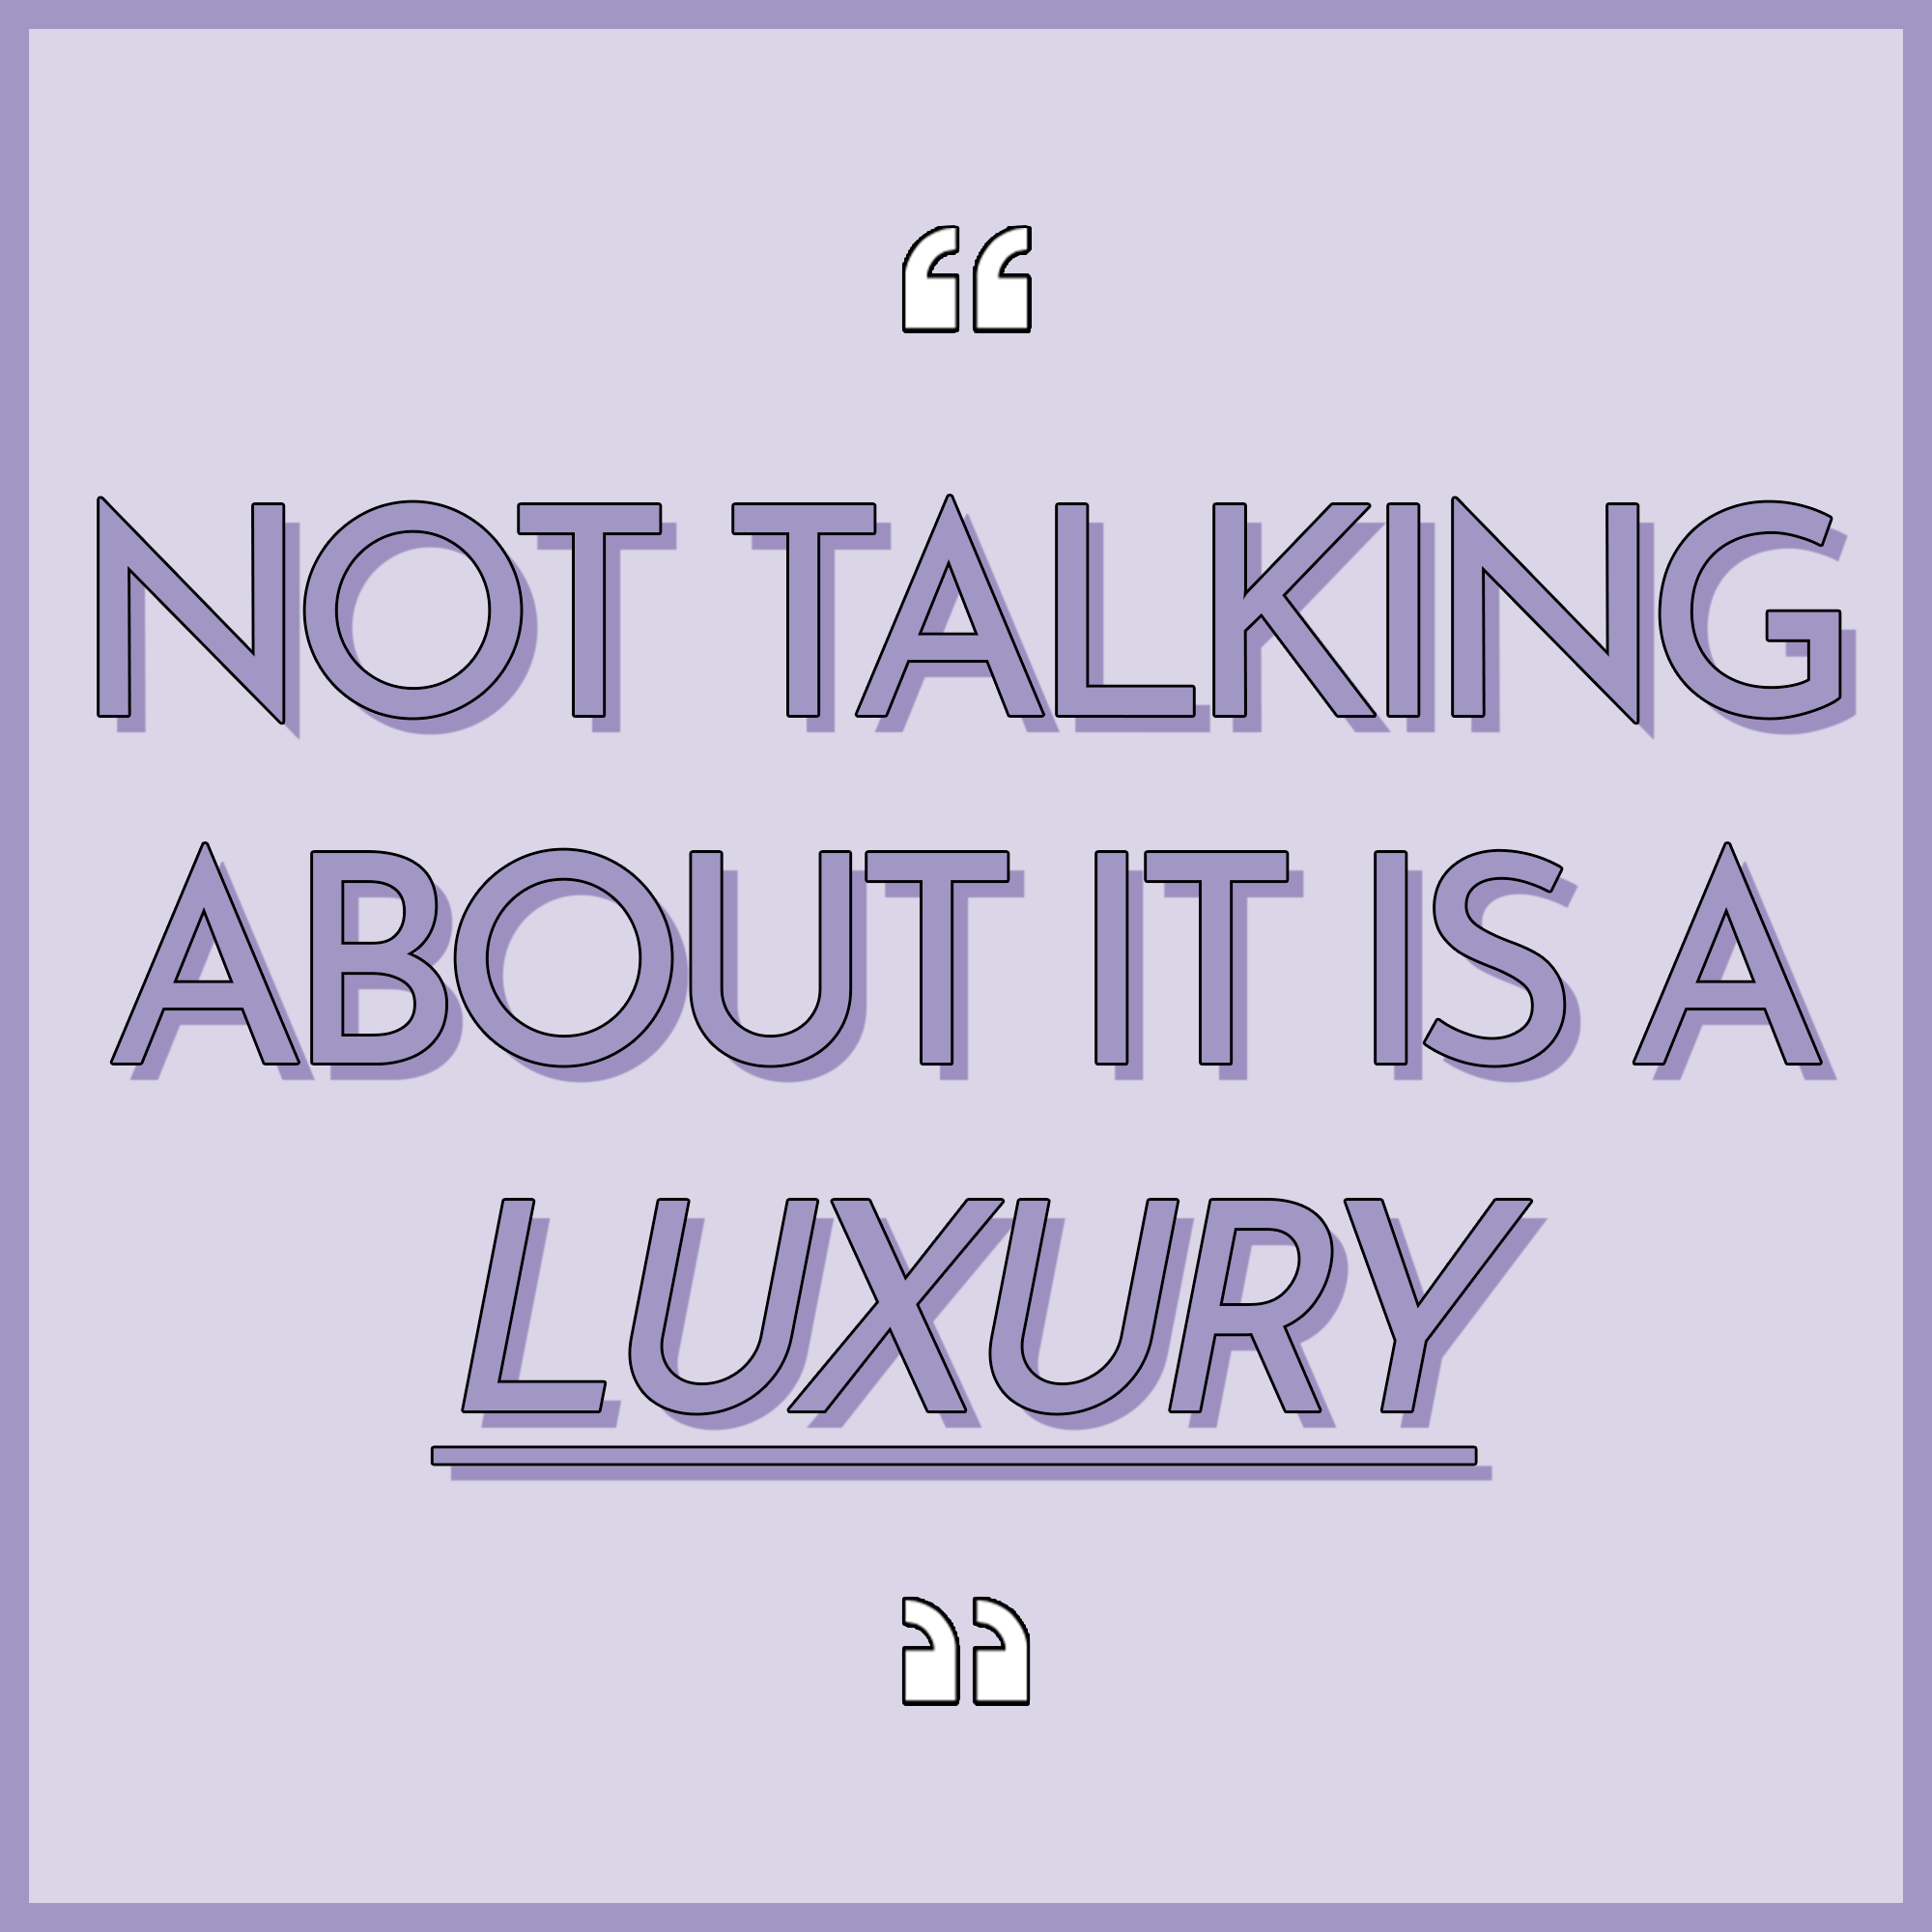 Not talking about it is a luxury